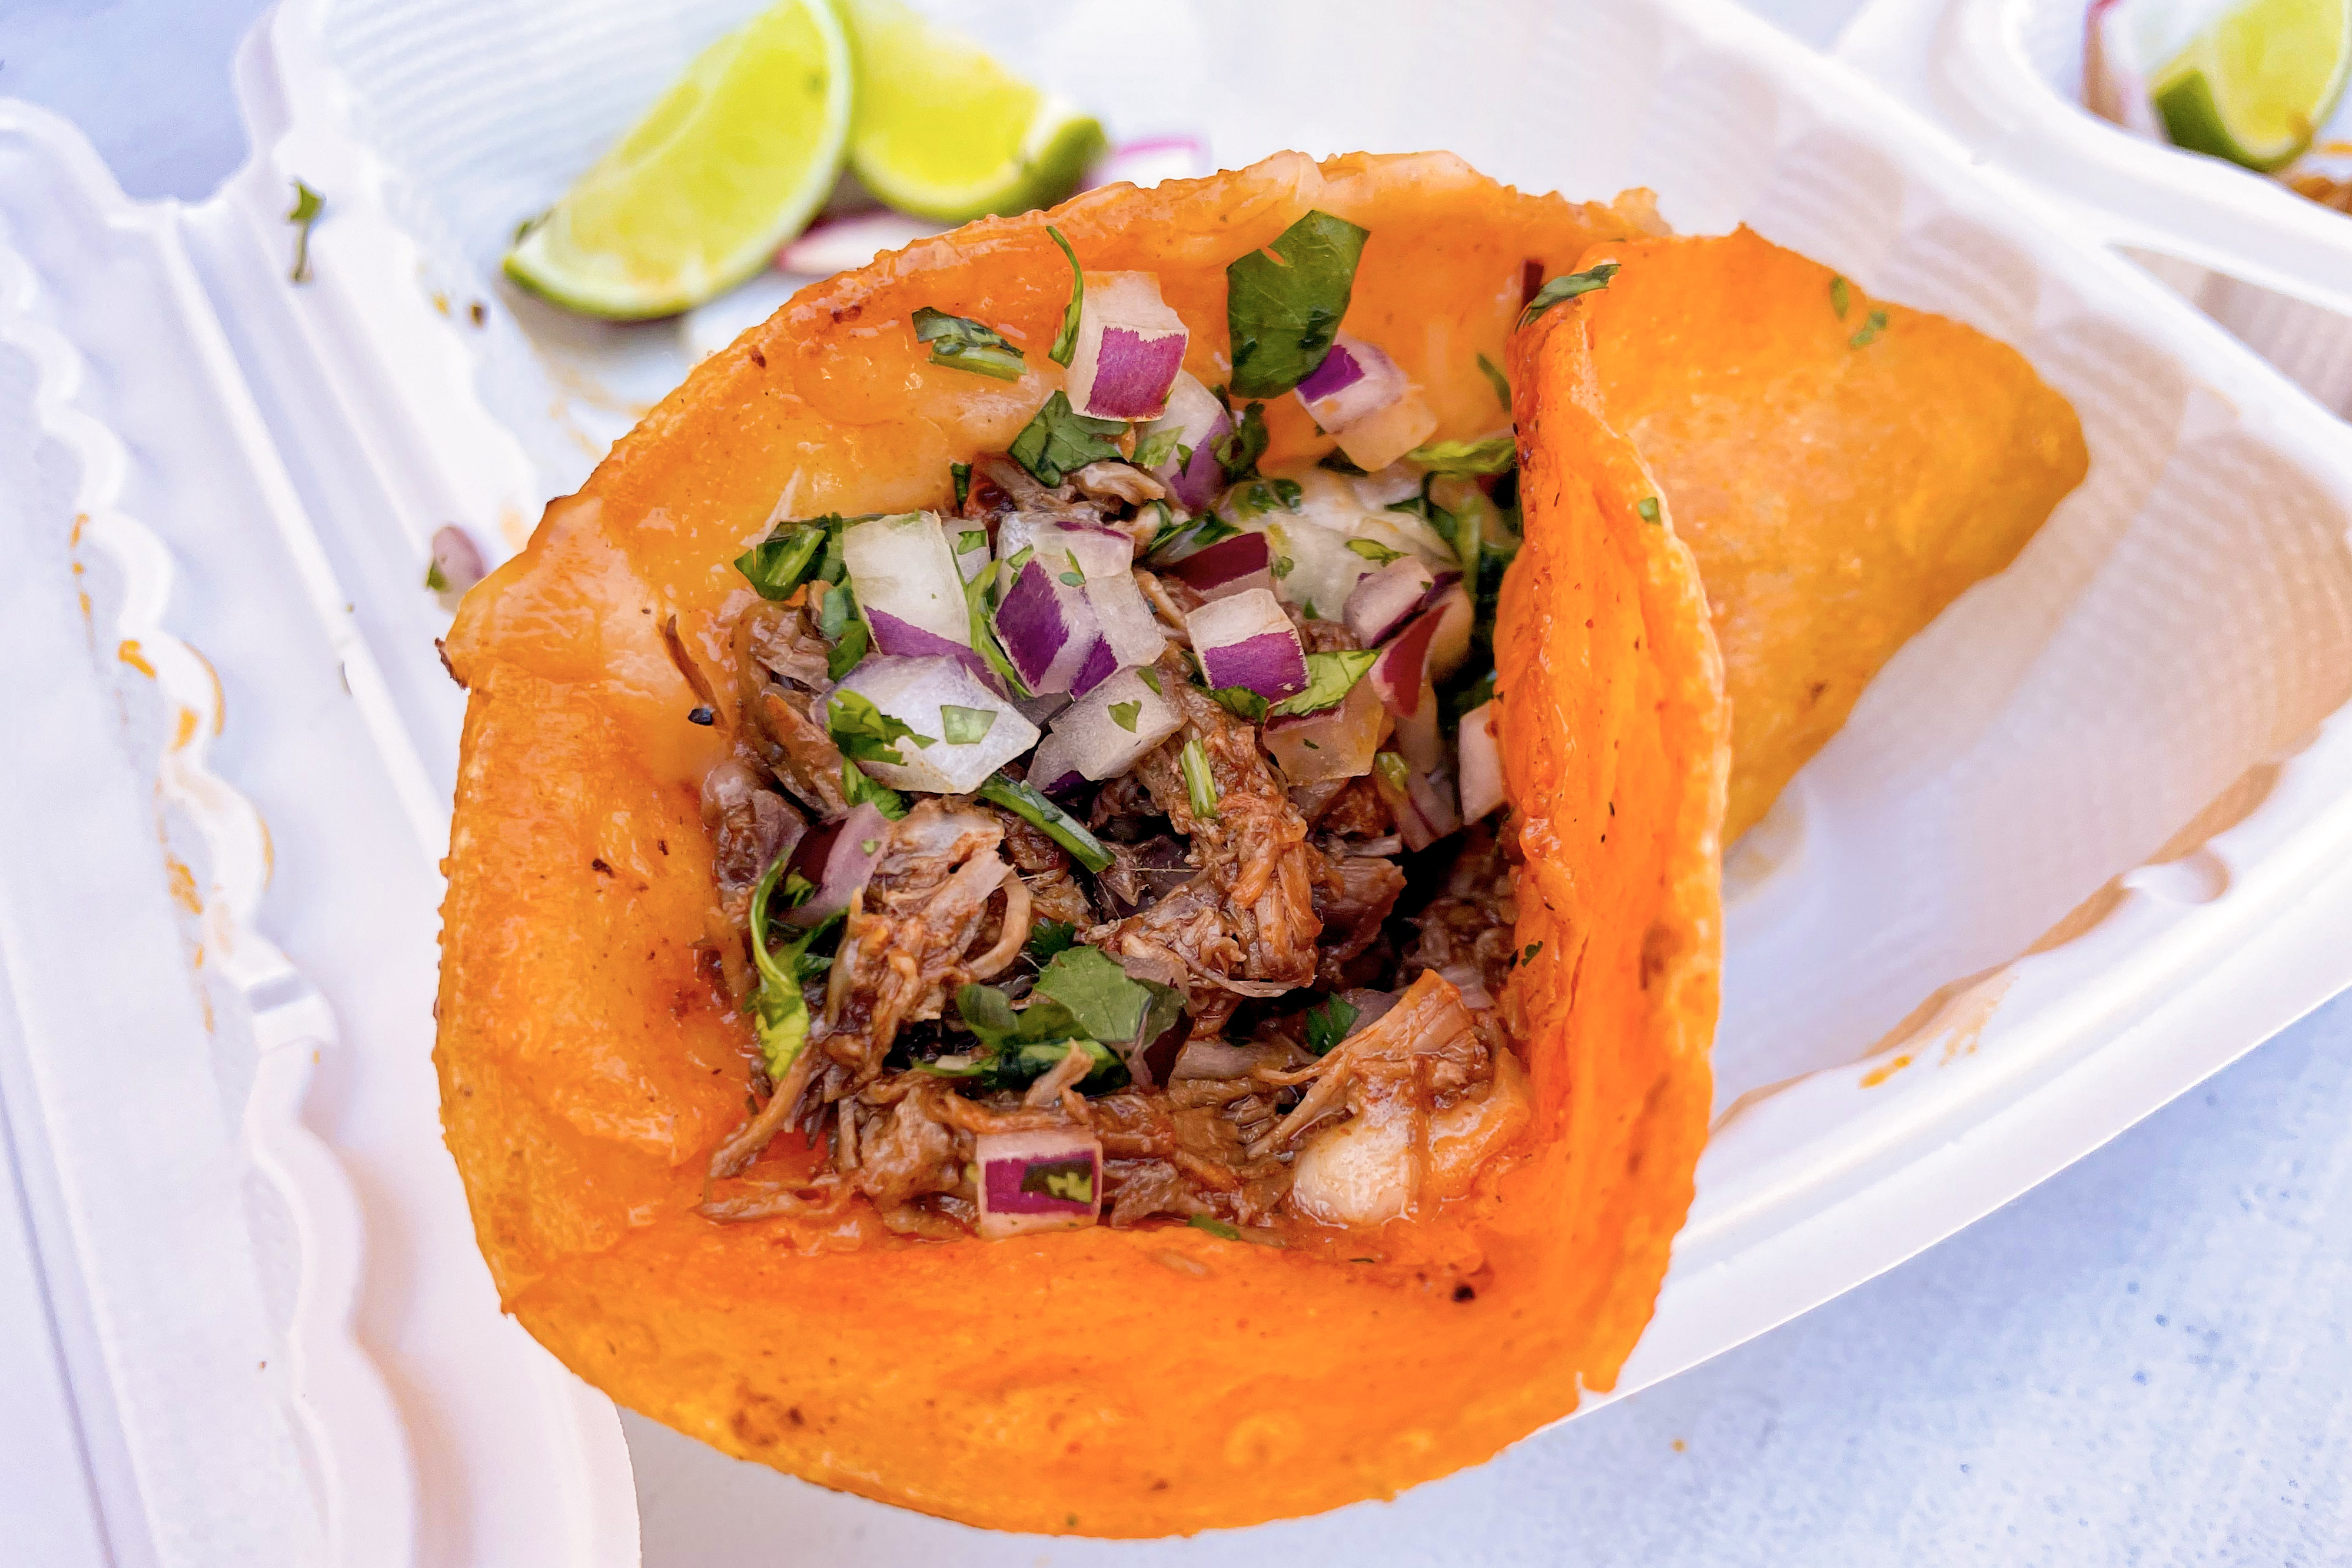 Mike's Red Tacos seeks best of both tortillas | San Diego Reader